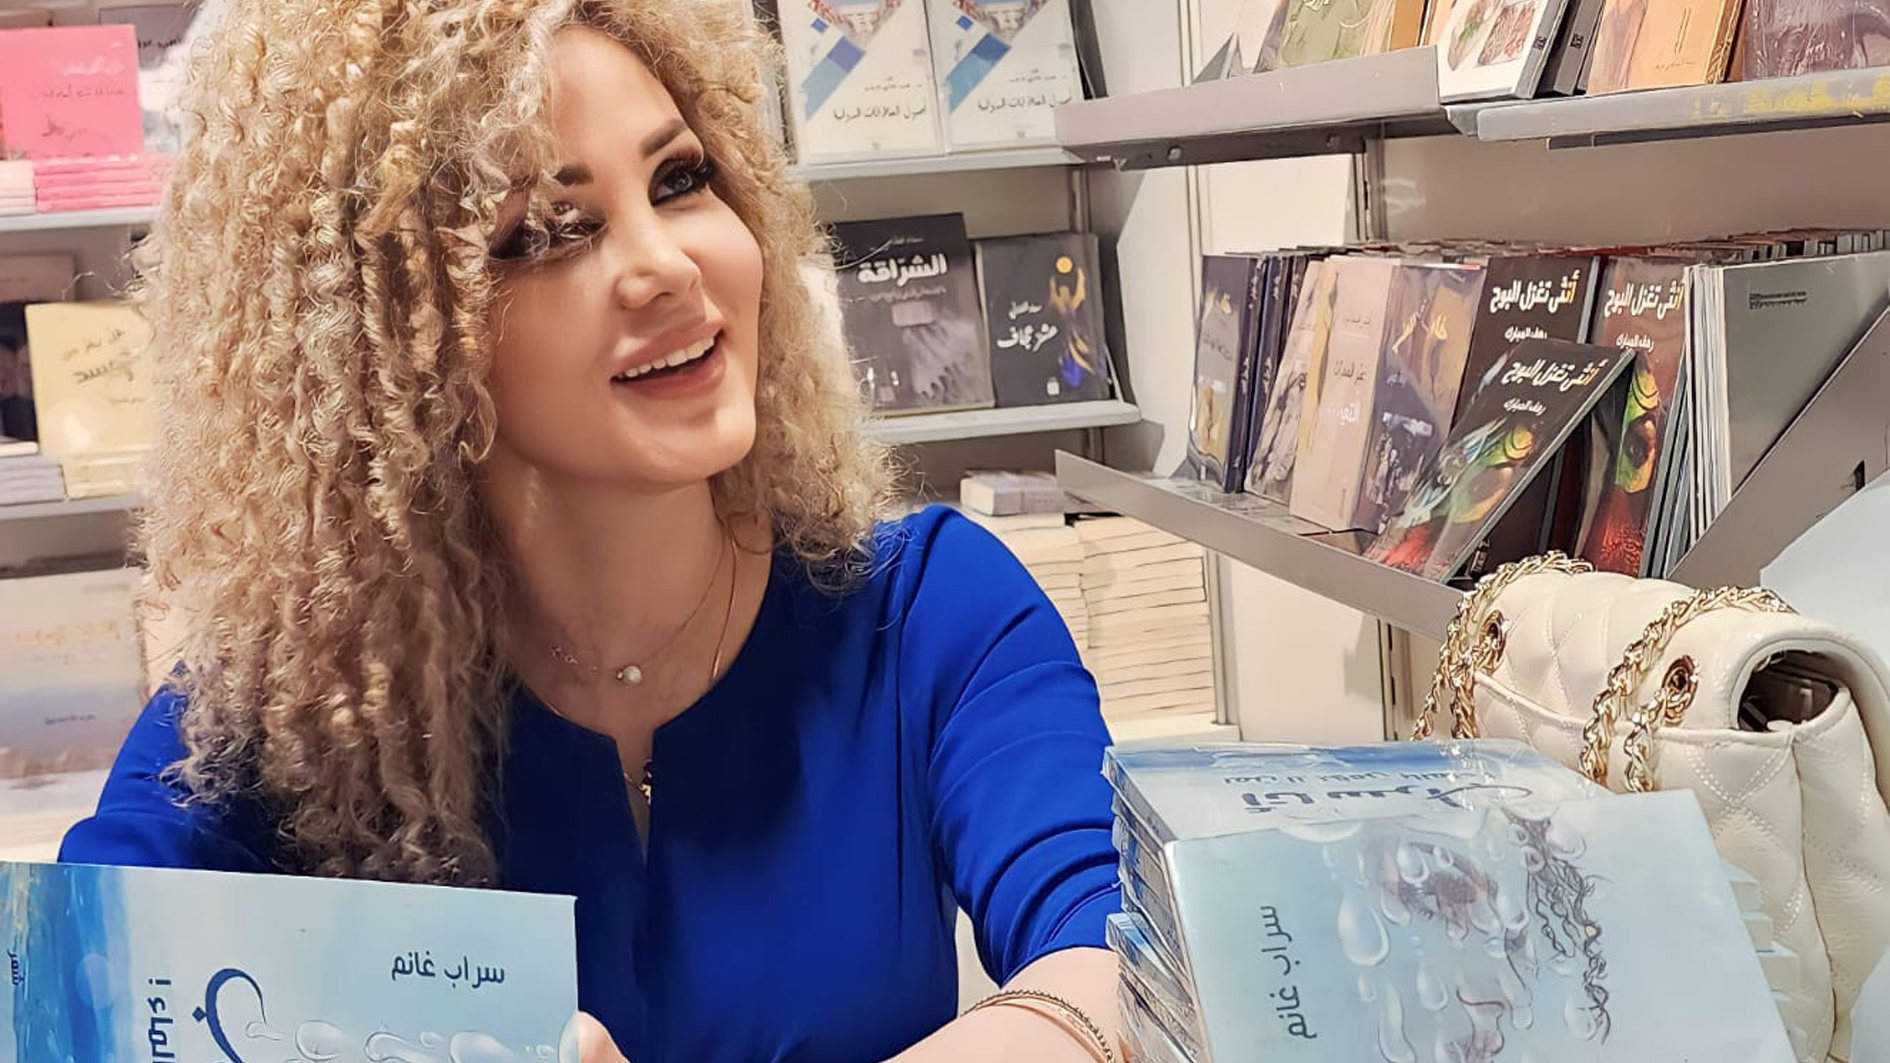 الكاتبة السورية سراب غانم تصدر كتابها الأول